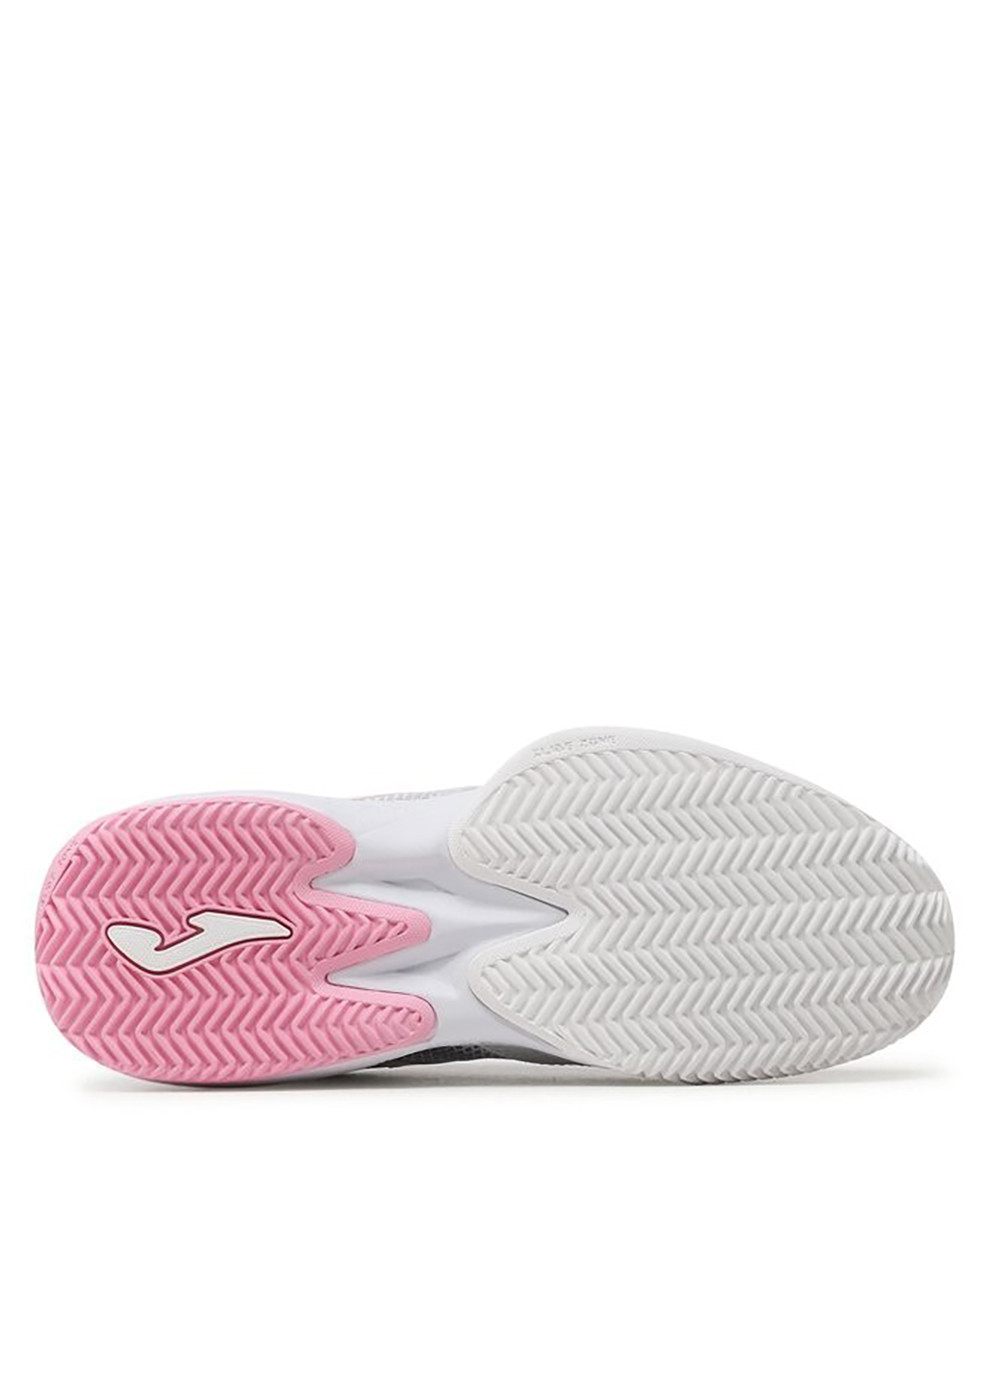 Белые демисезонные кроссовки женские master 1000 lady white/pink белый, розовый Joma